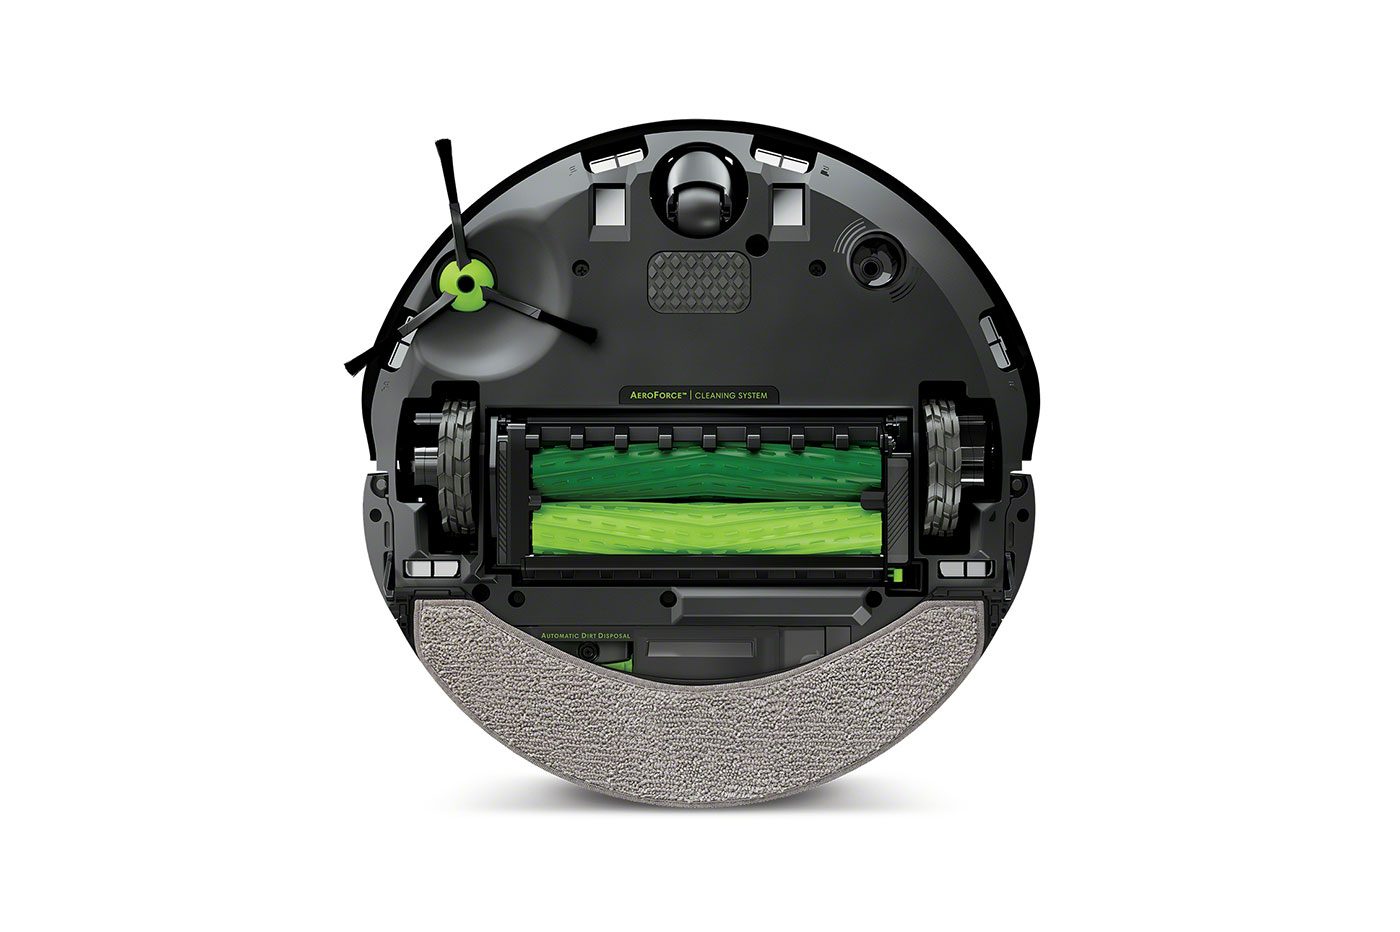 Test Roomba Combo j7+ d'iRobot : un robot aspirateur laveur capable de  (presque) tout faire tout seul